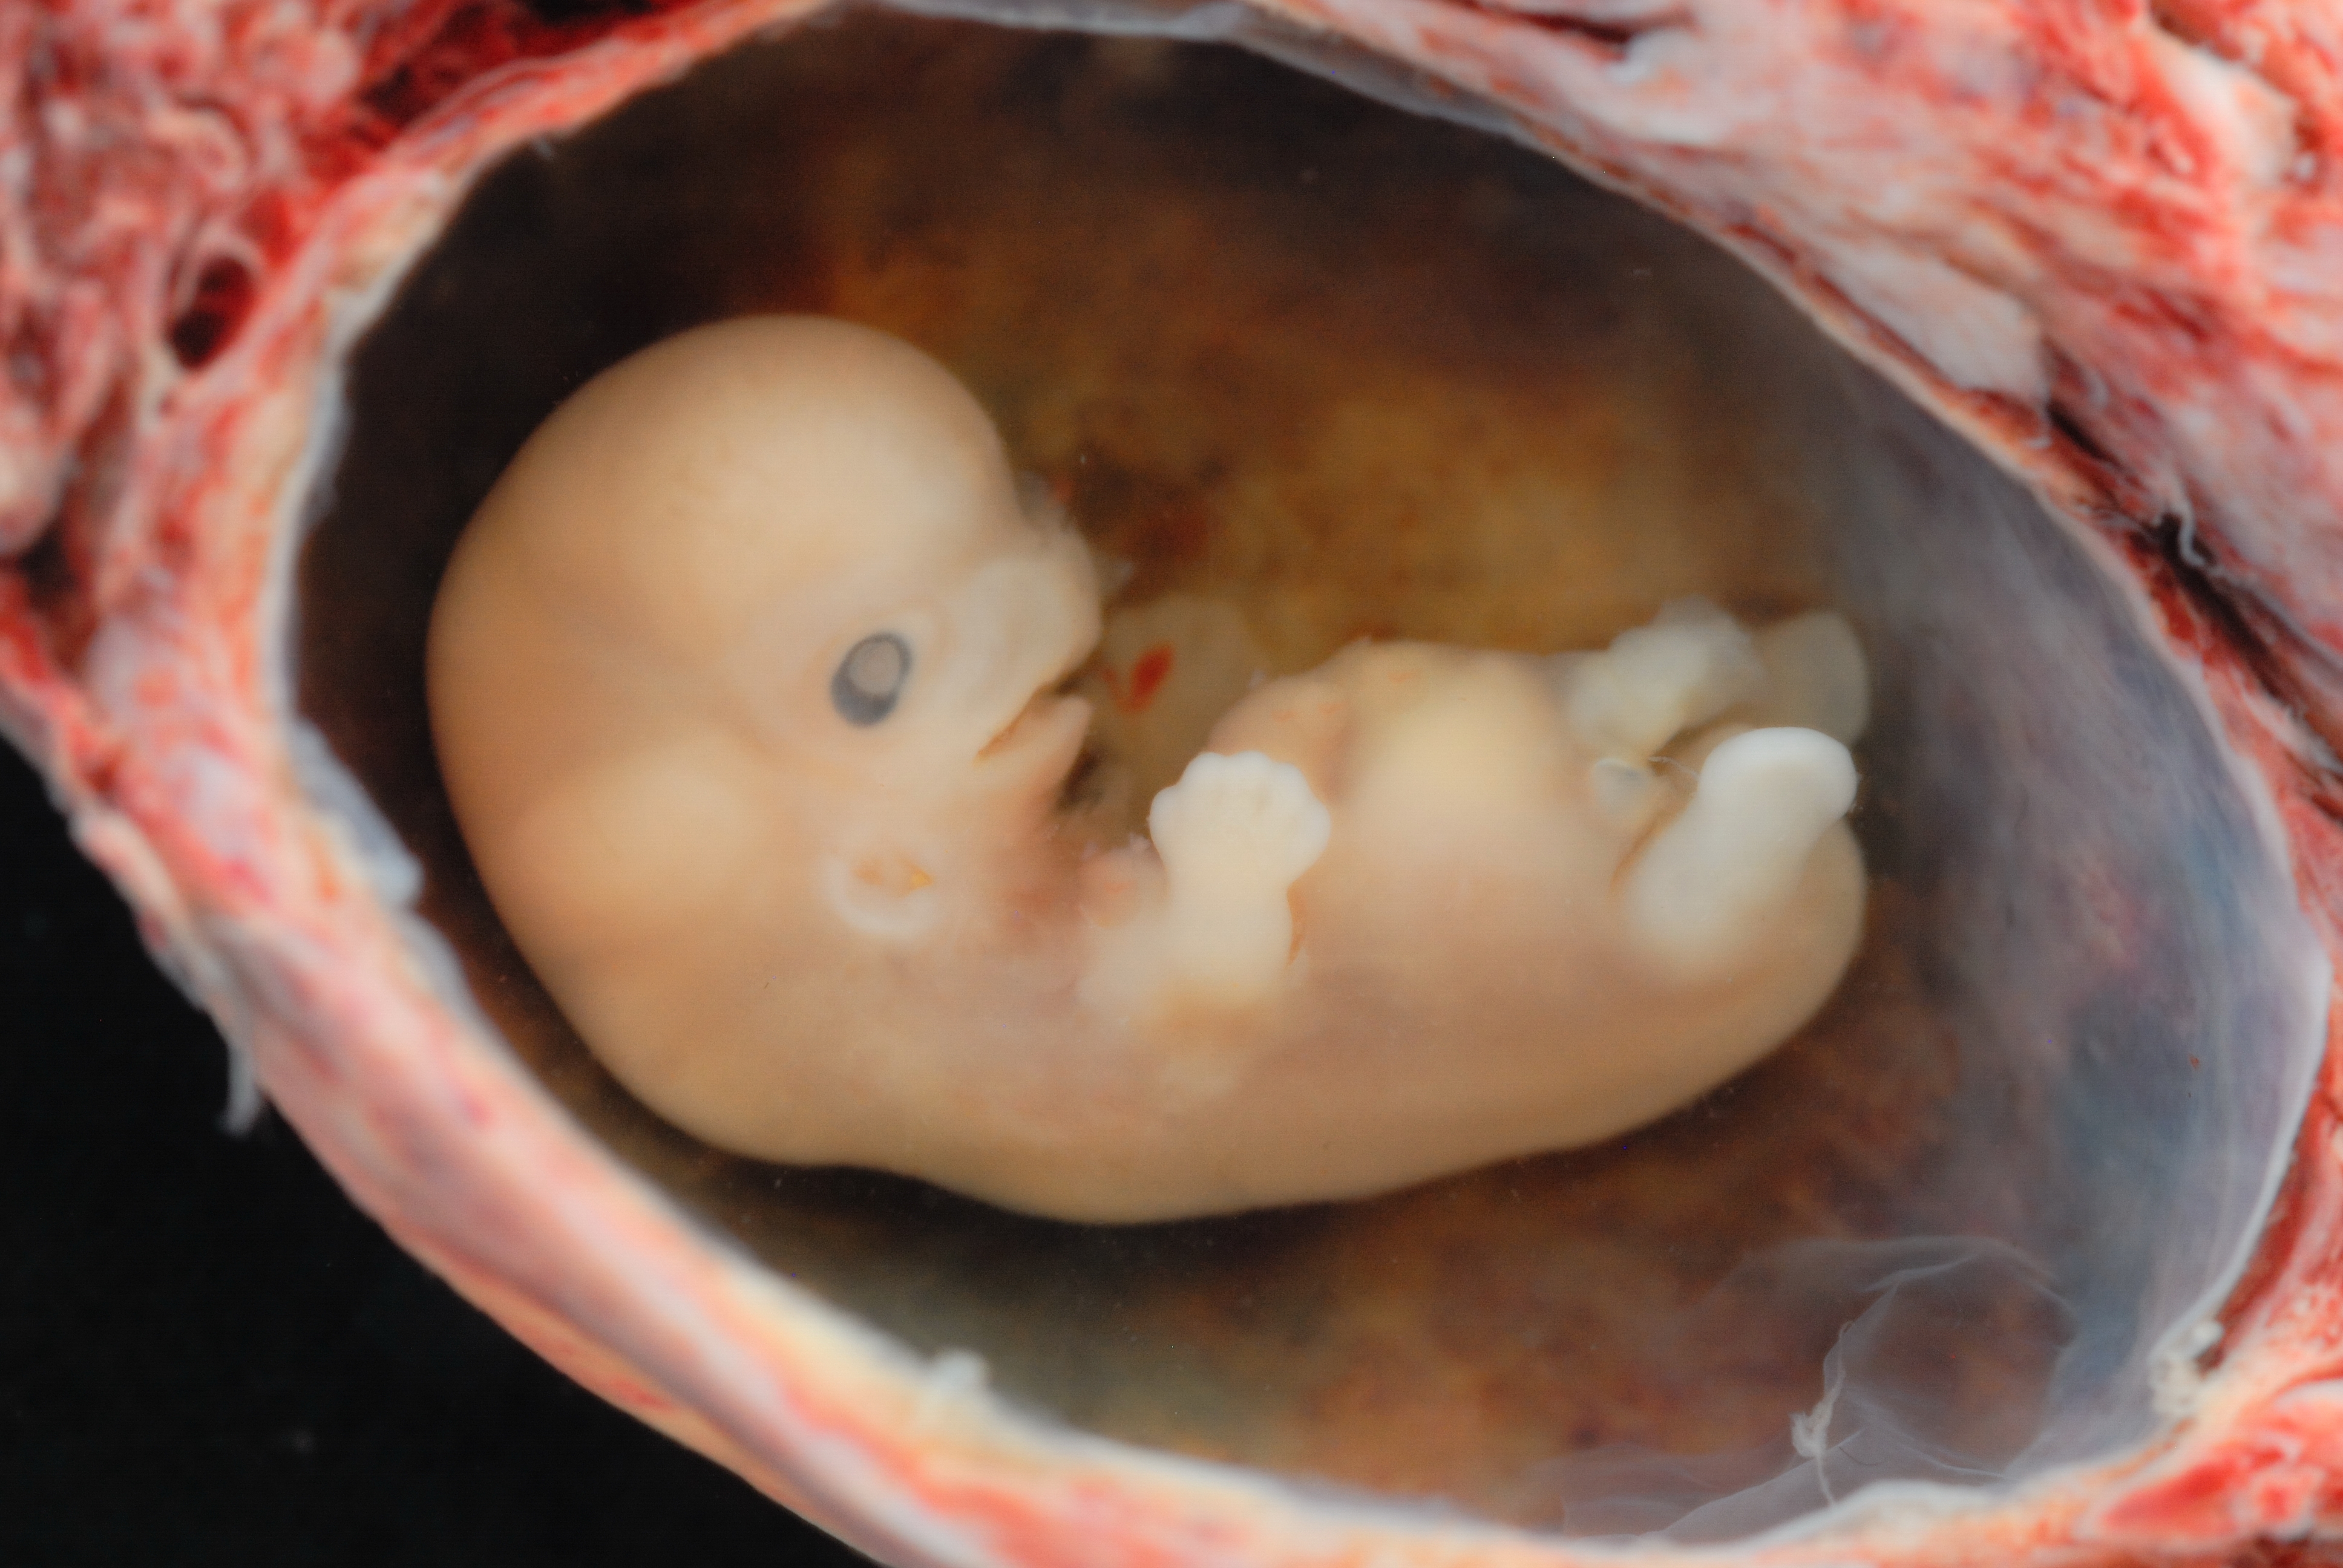 De gruweltoestanden rond abortus - Parbode Sneak Peek